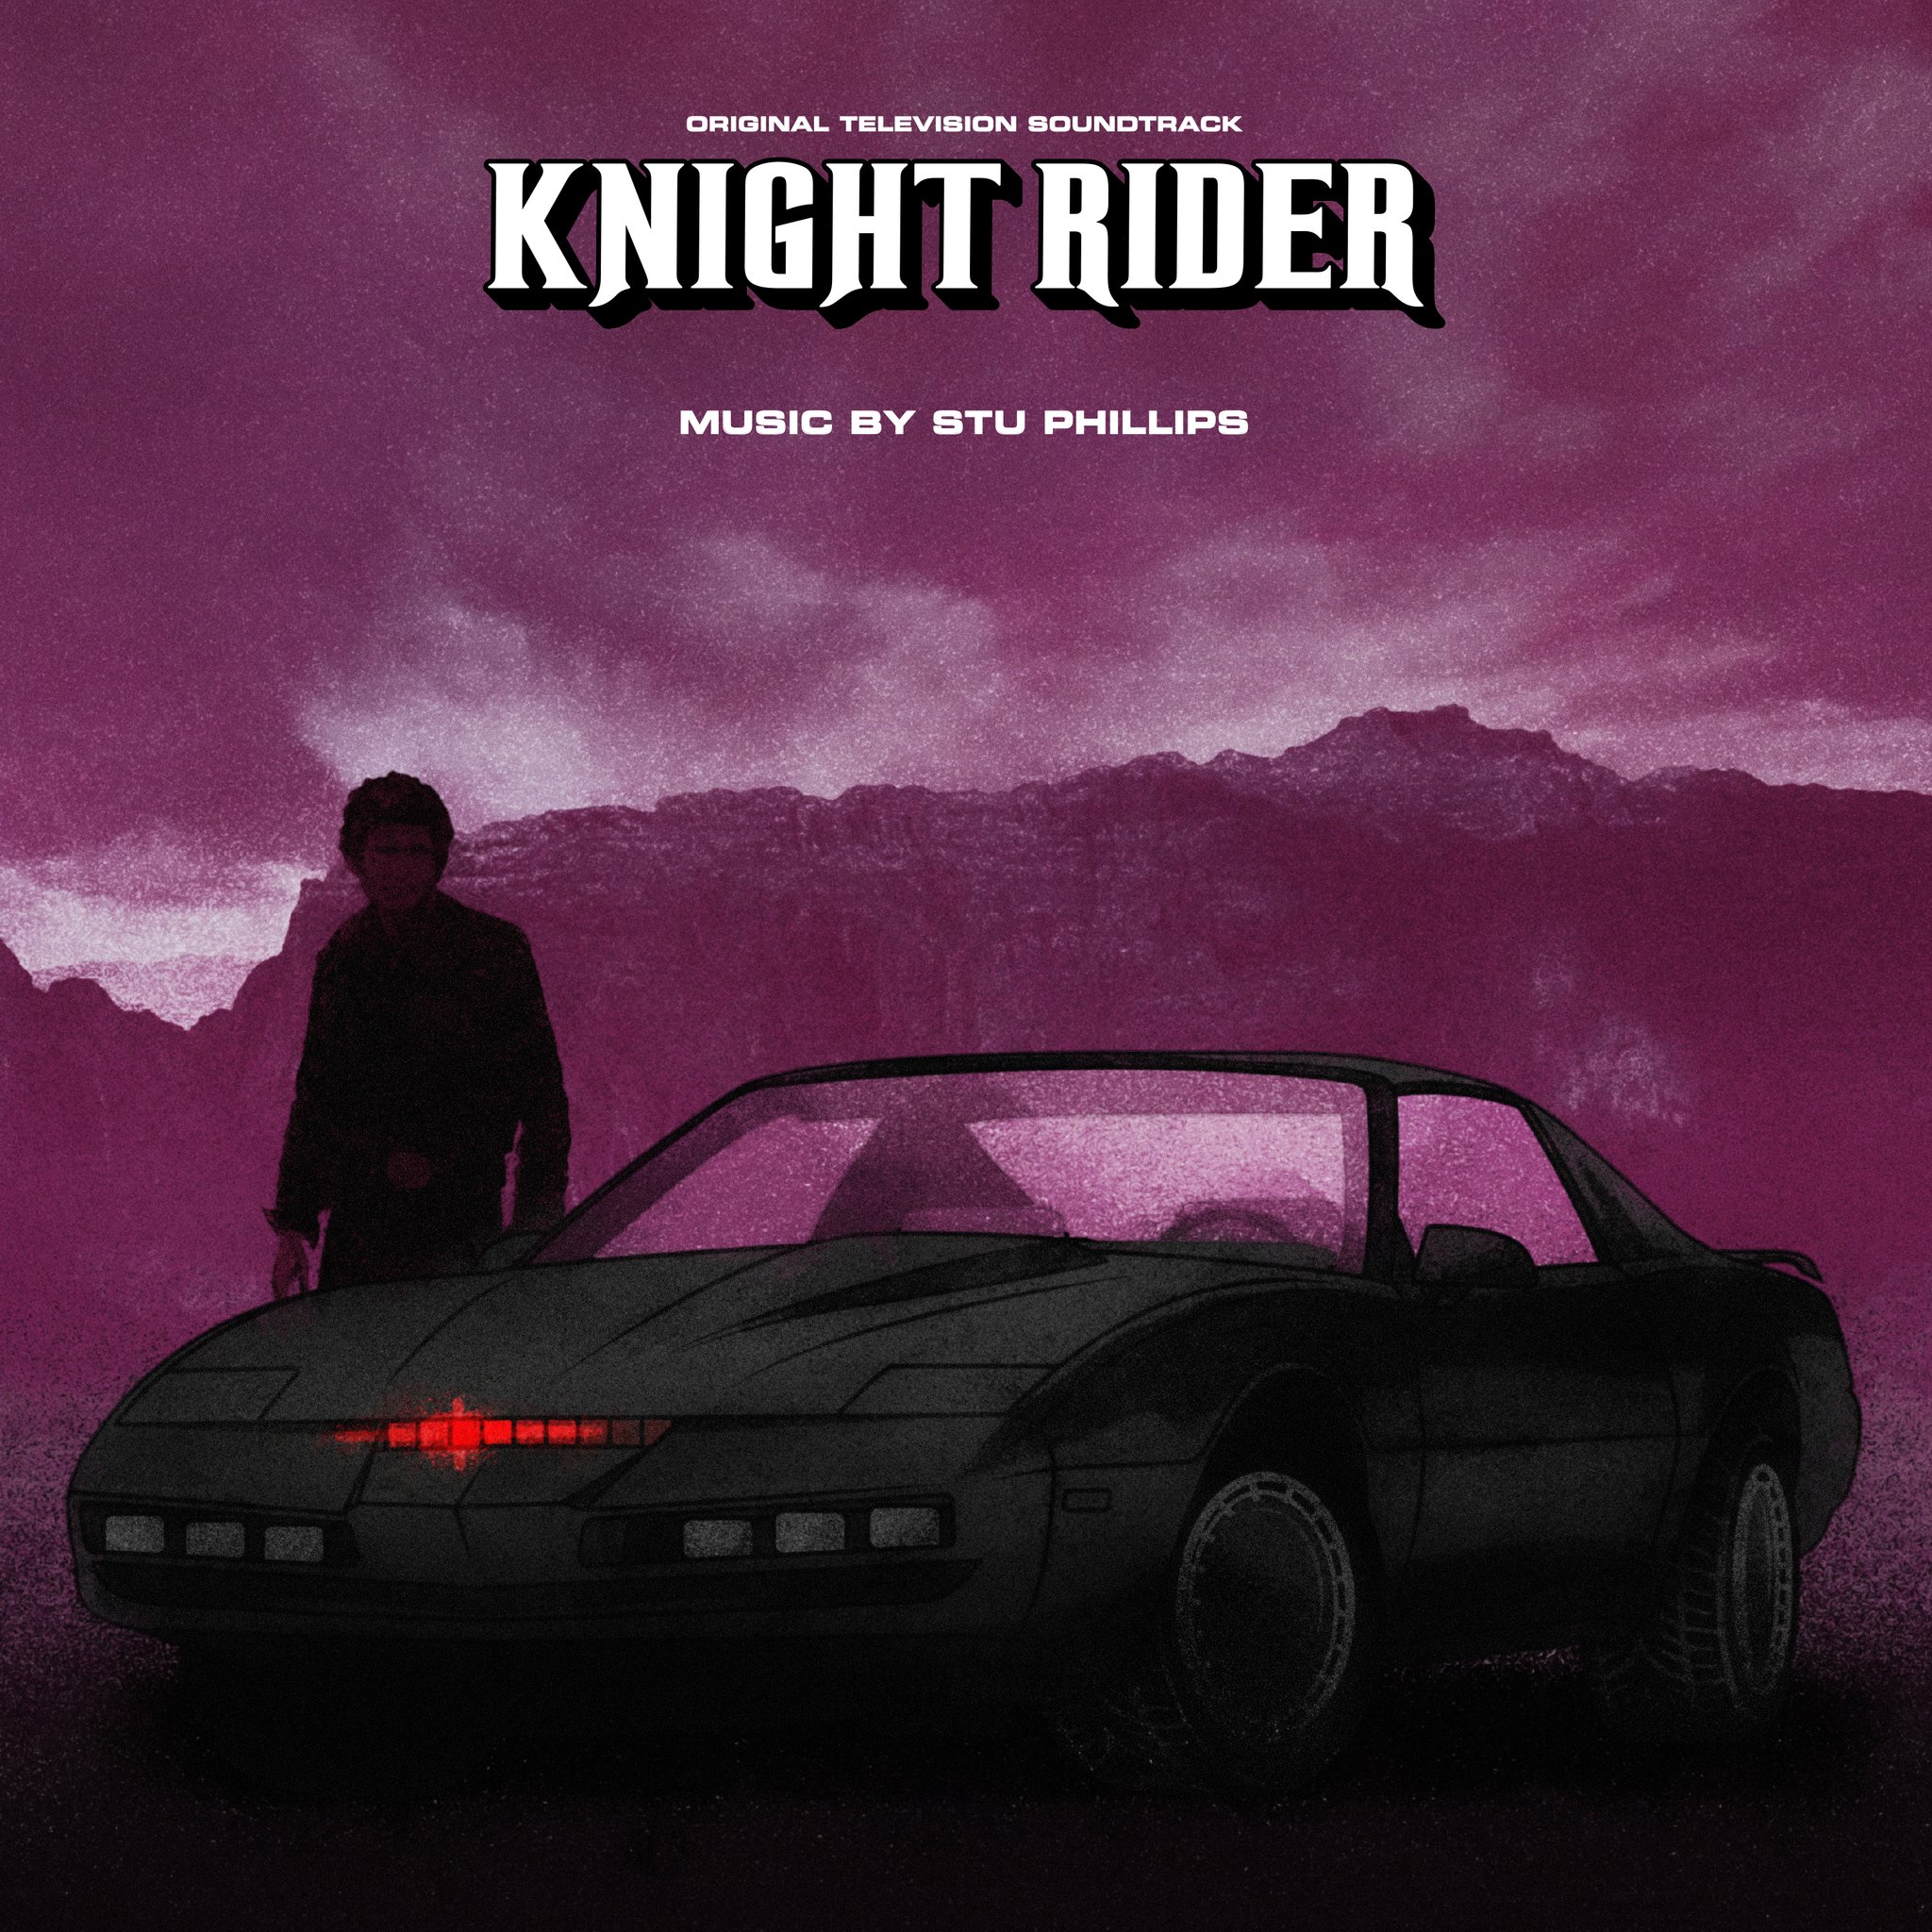 K 2000 (Knight Rider) (1982-1986)